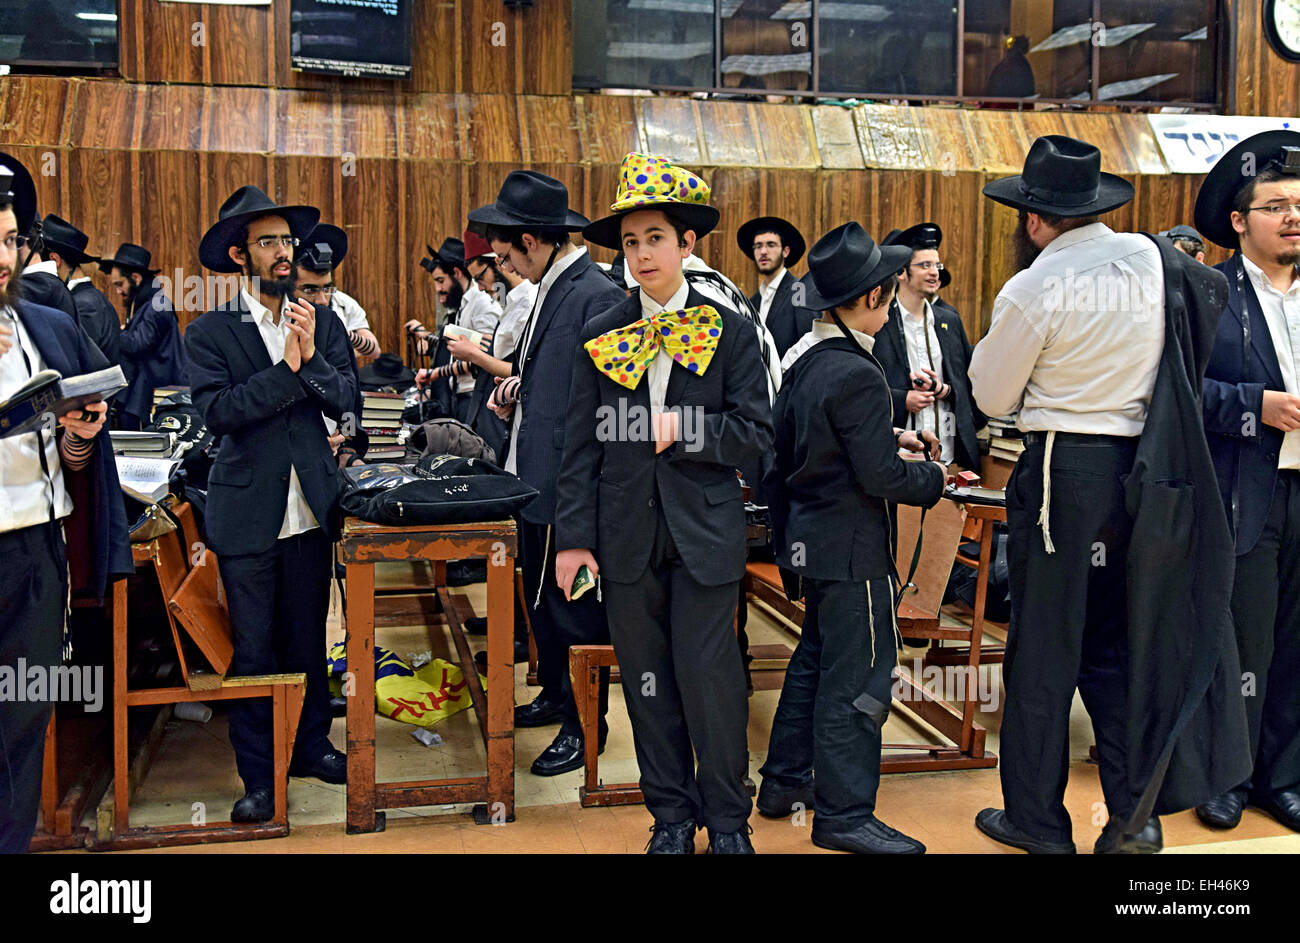 Un groupe de religieux juifs, hommes y compris, dont un dans un costume de Pourim dans une synagogue à Brooklyn, New York. Banque D'Images